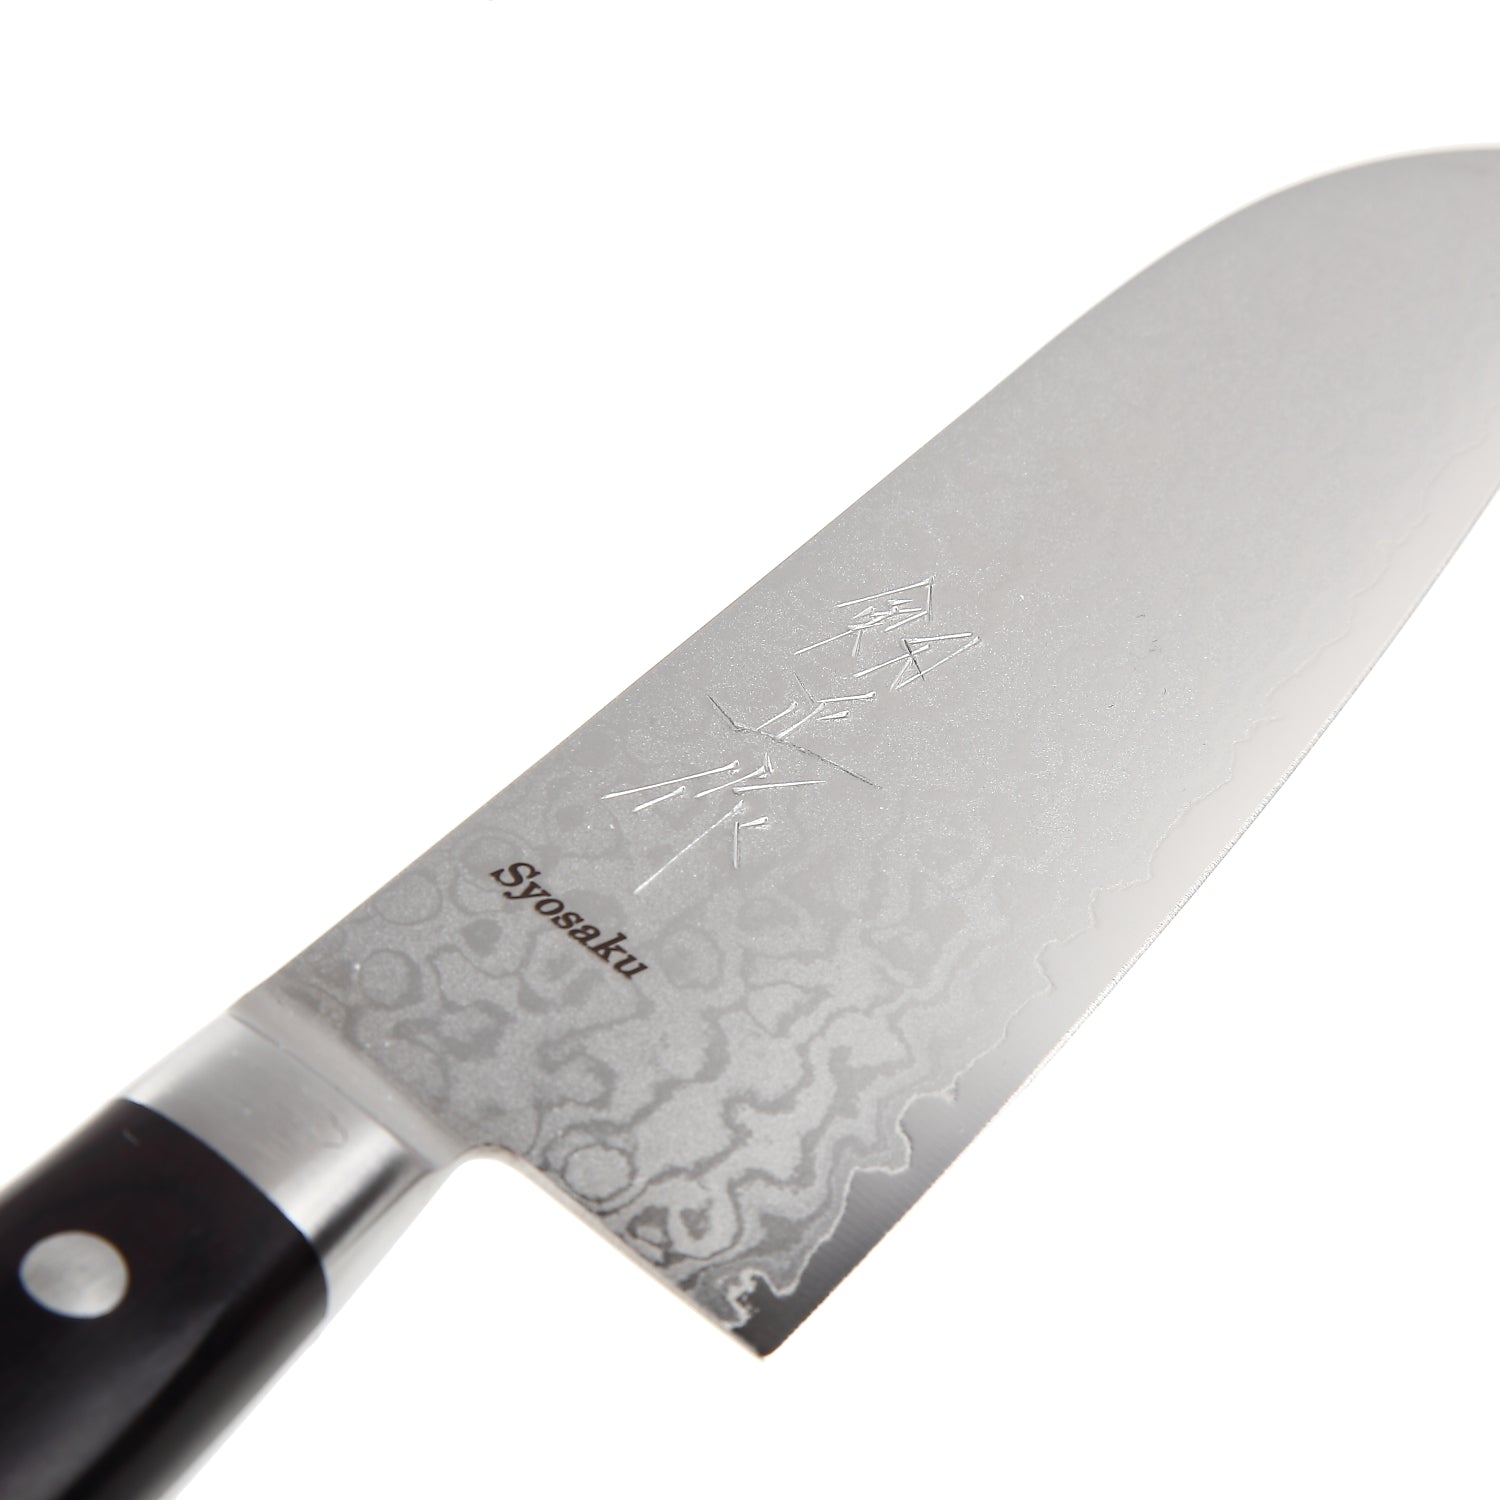 Syosaku Japanese Multi Purpose Best Sharp Kitchen Chef Knife Shaded Damascus VG-10 16 Layer Black Pakkawood Handle, Santoku 6.5-inch (165mm) - Syosaku-Japan